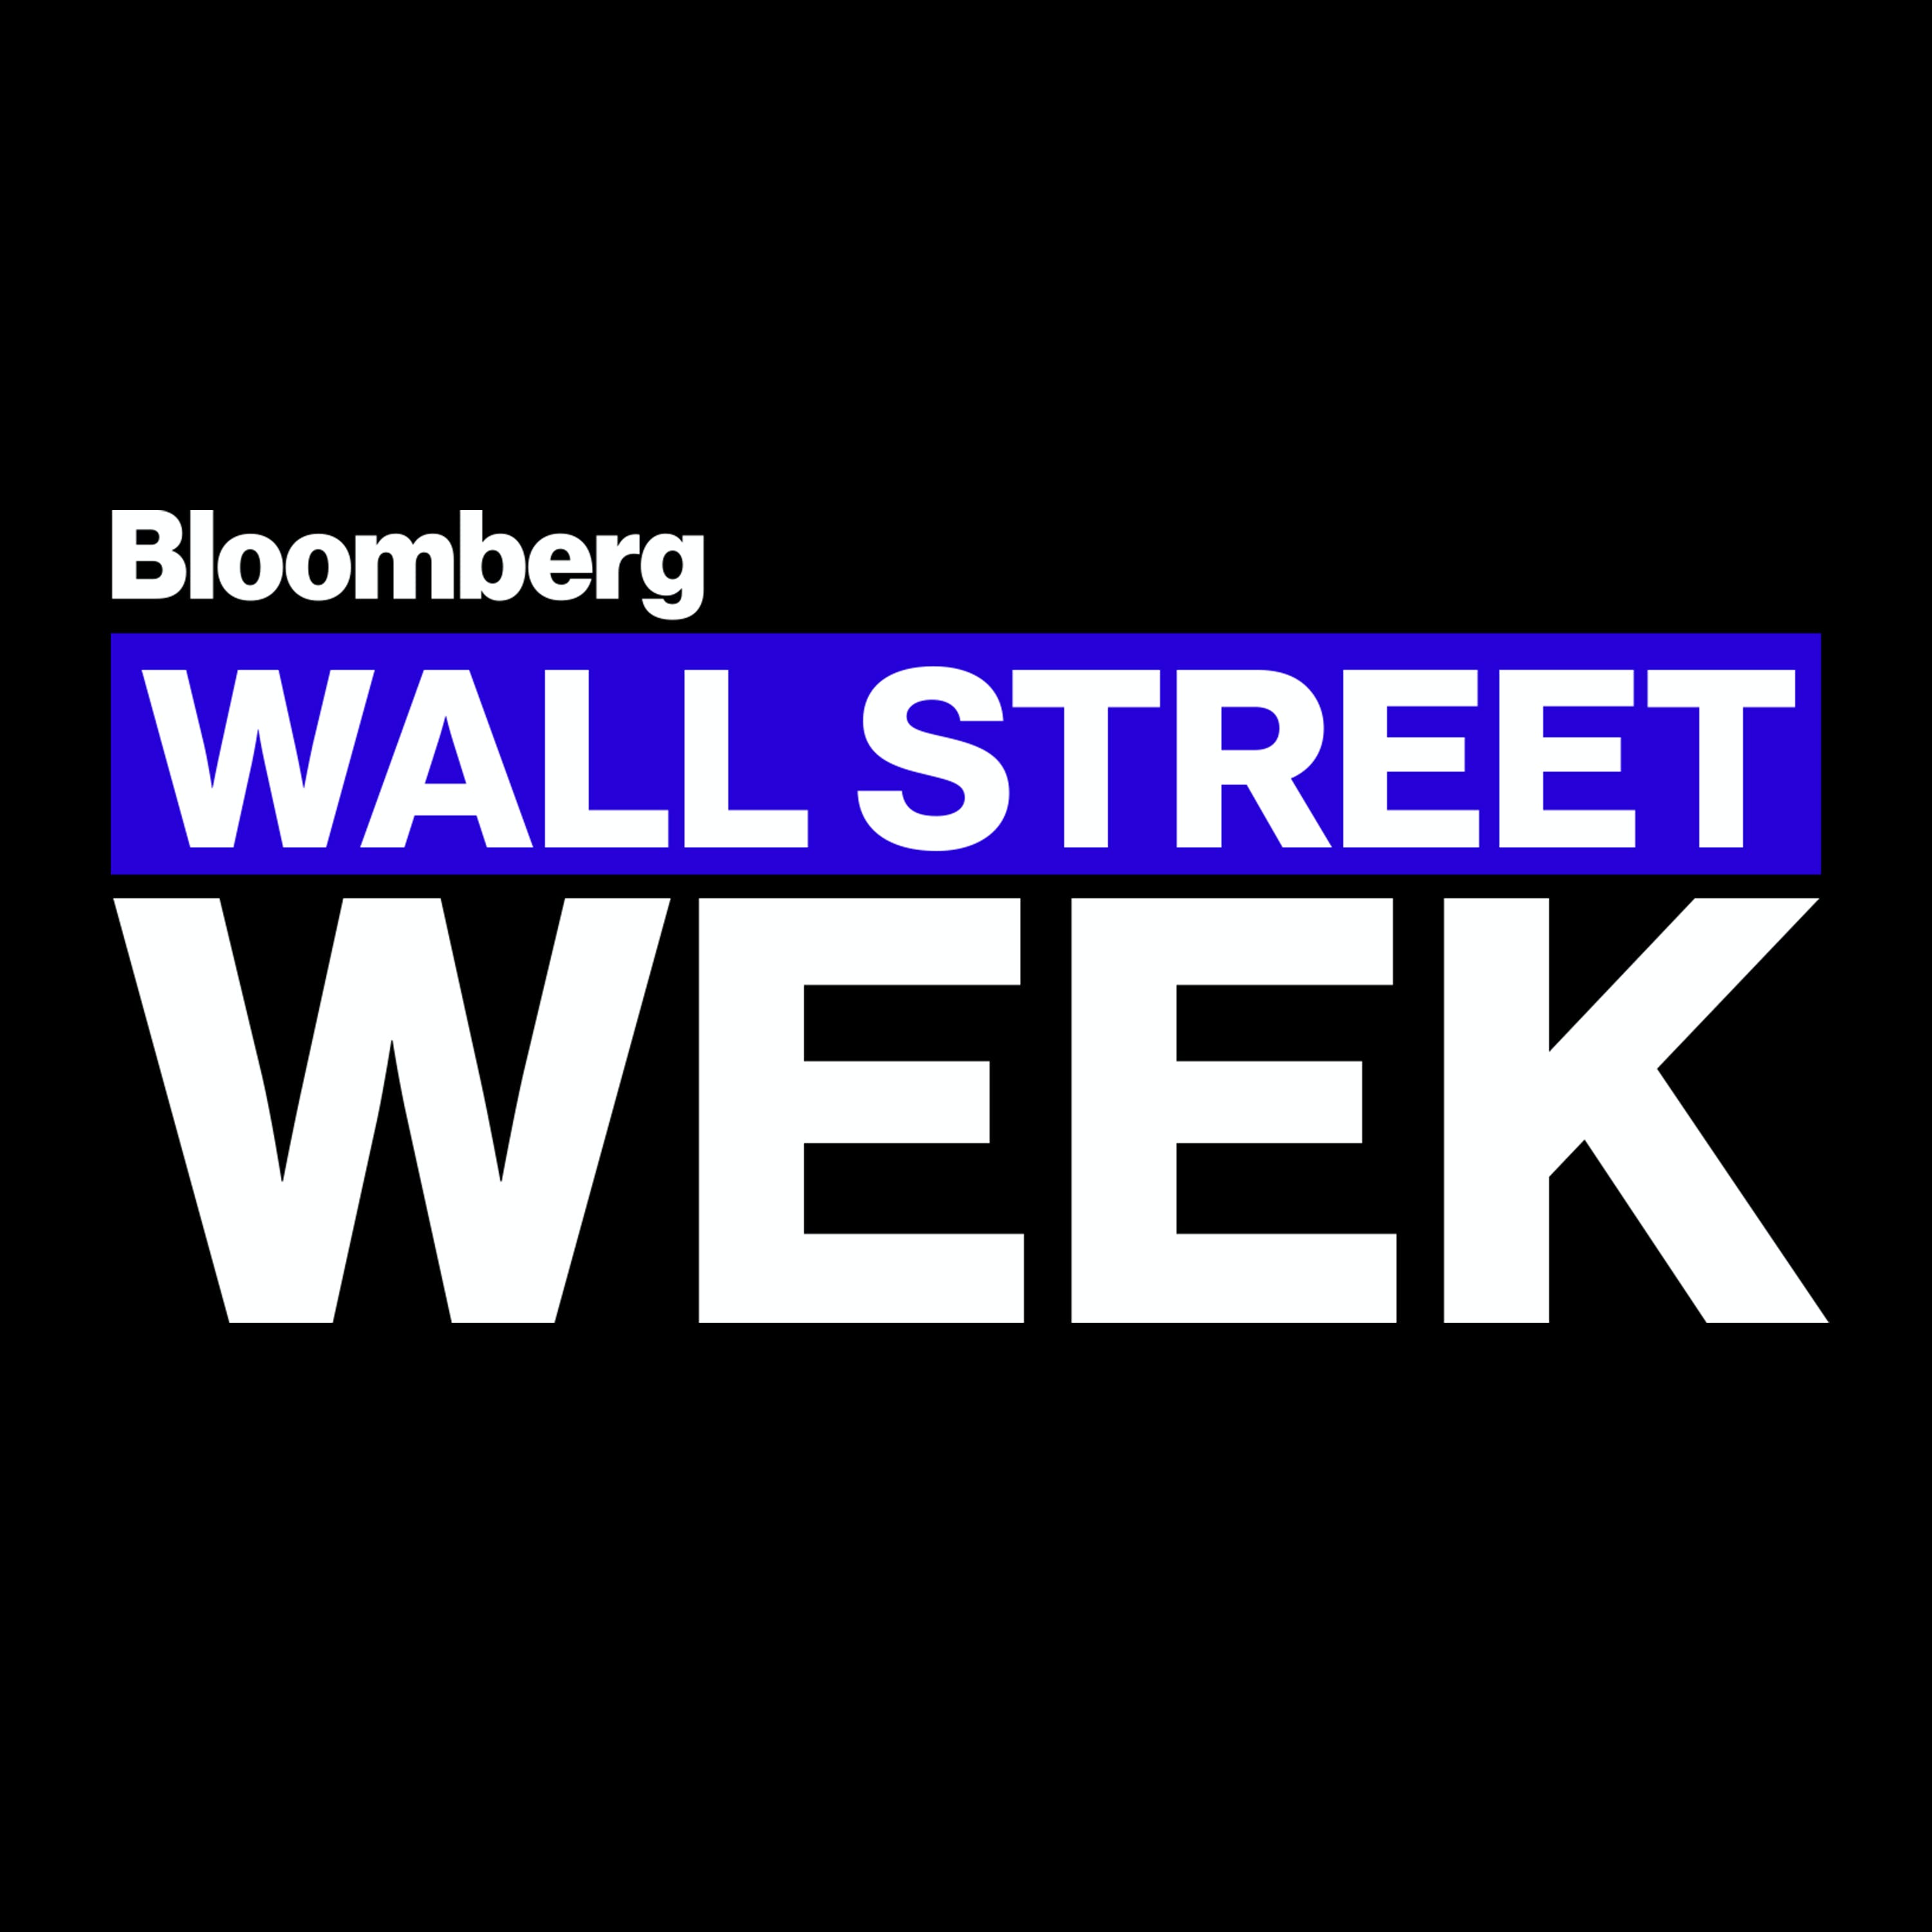 Bloomberg Wall Street Week: Rubenstein, Tett, Johnson